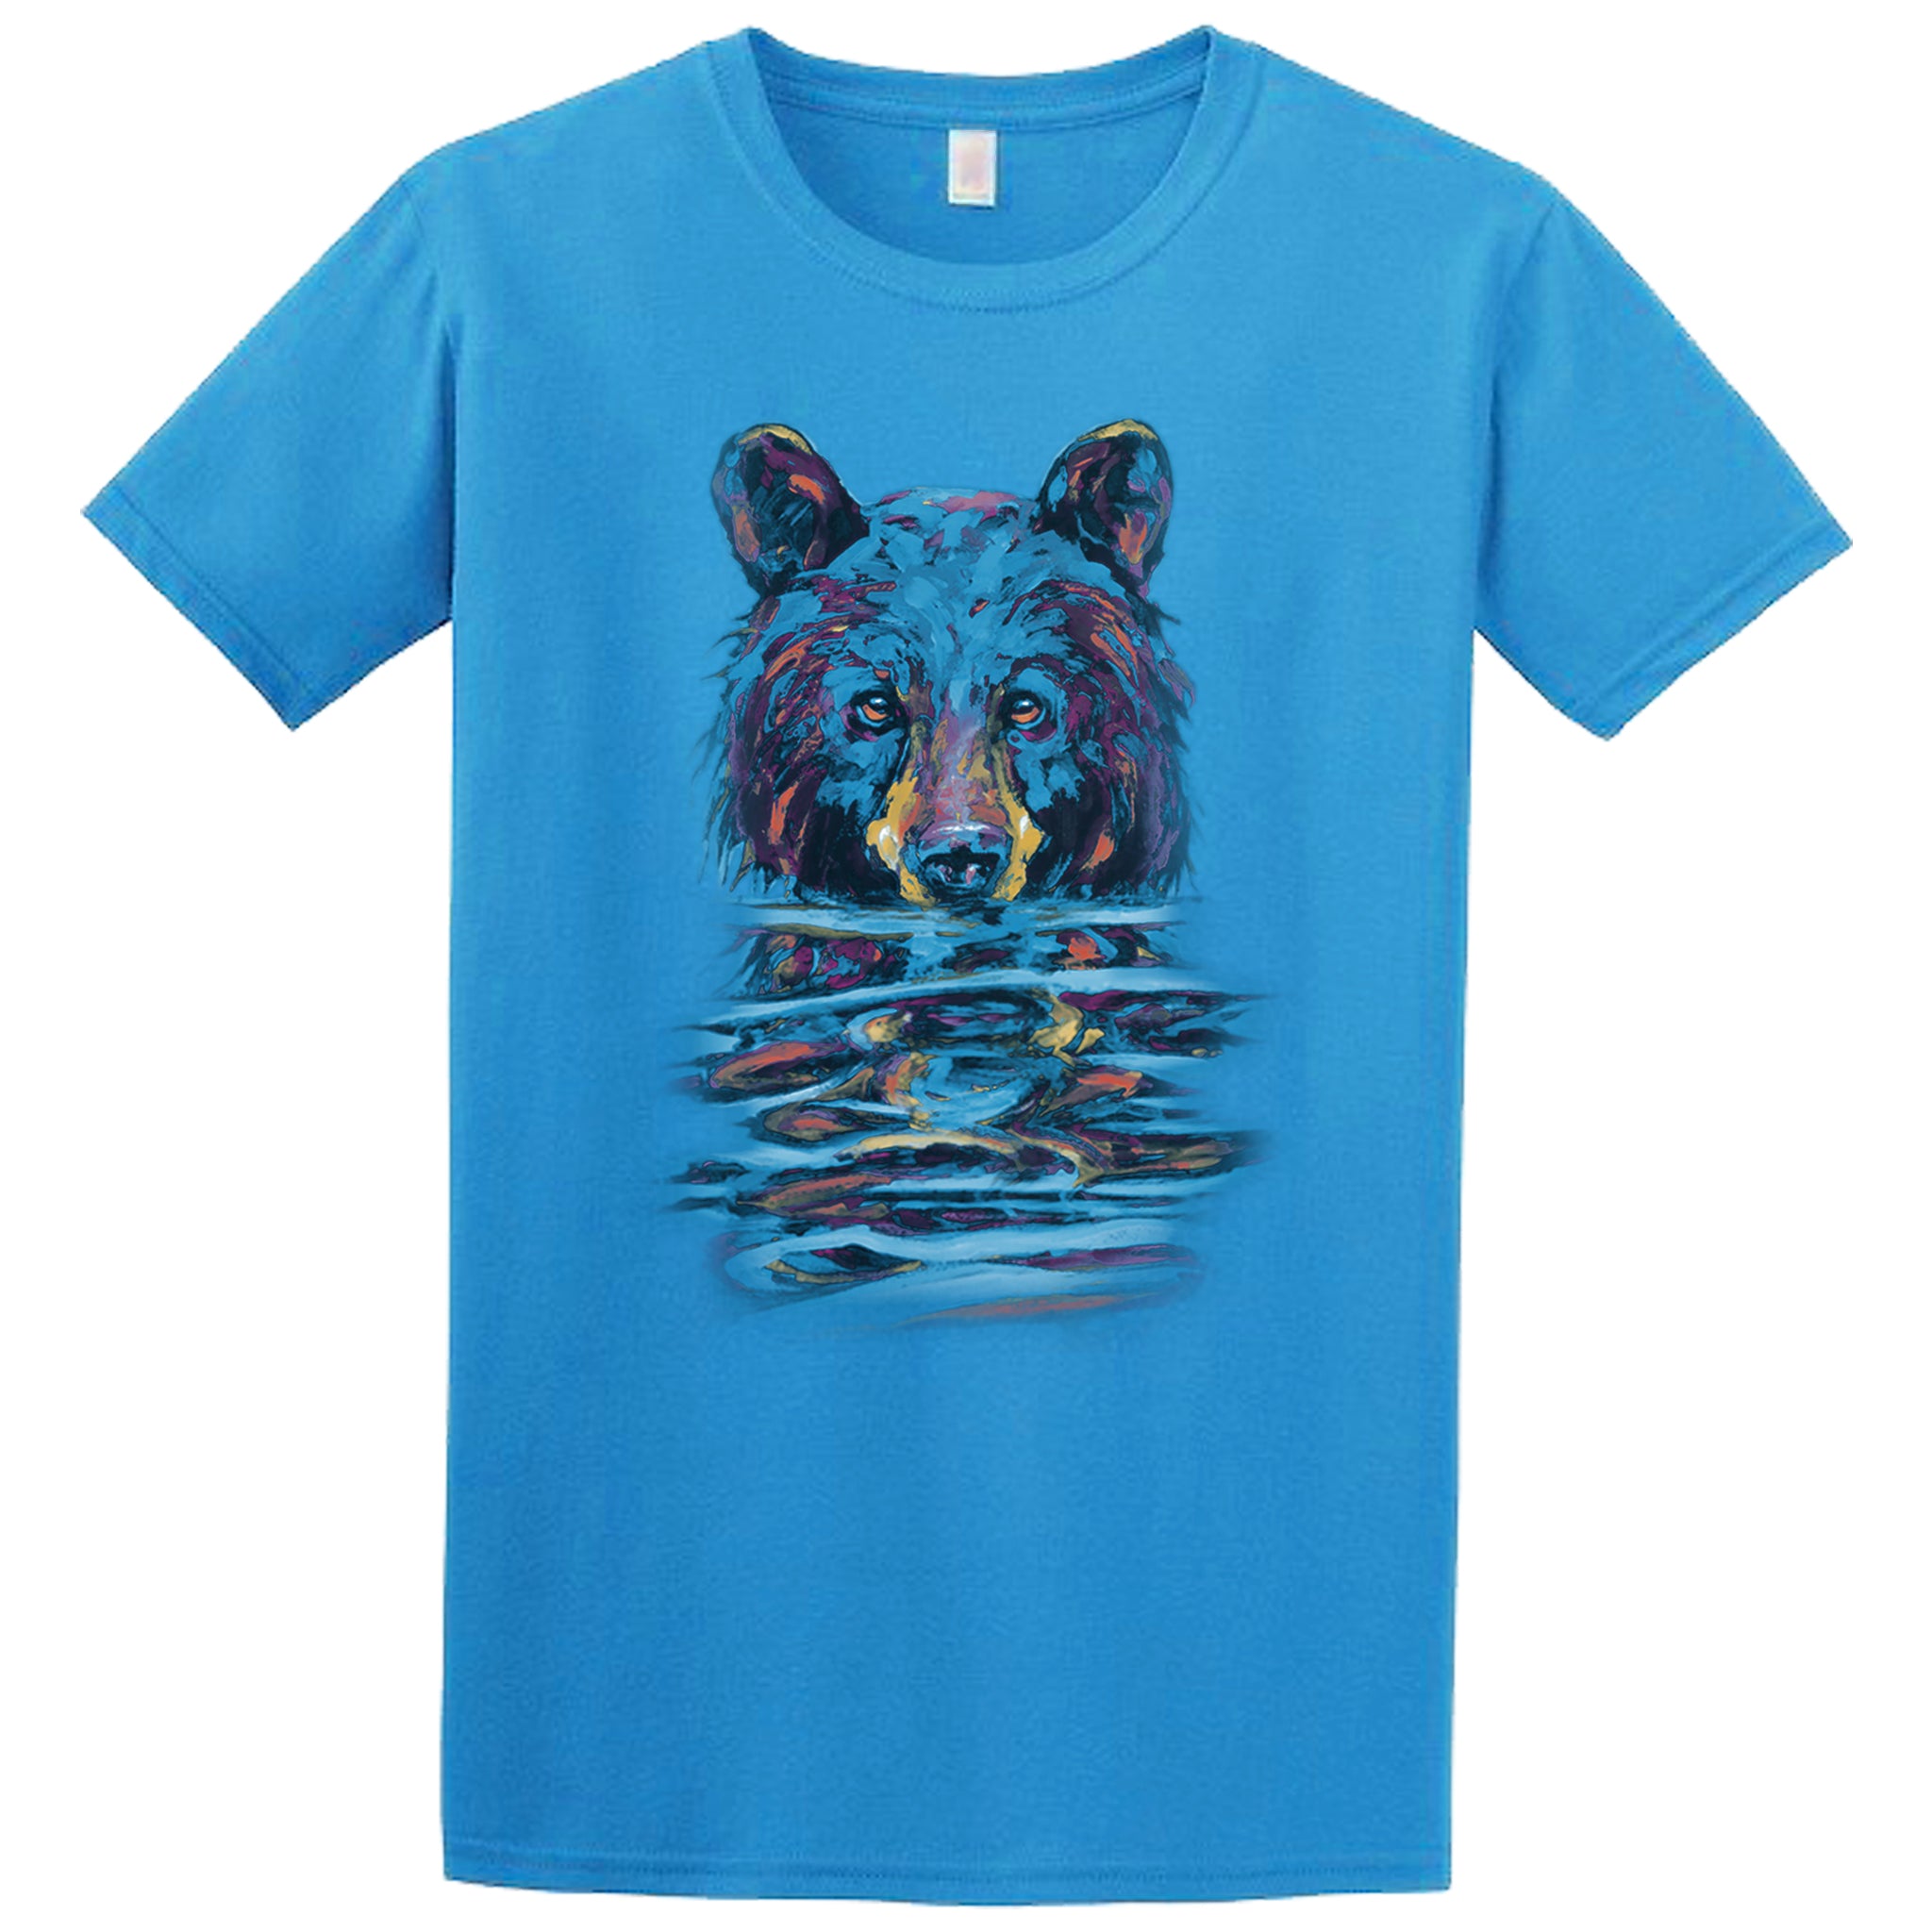 Very Wet Bear T-shirt - sapphire T-shirt with black bear art by Canadian nature artist Kari Lehr